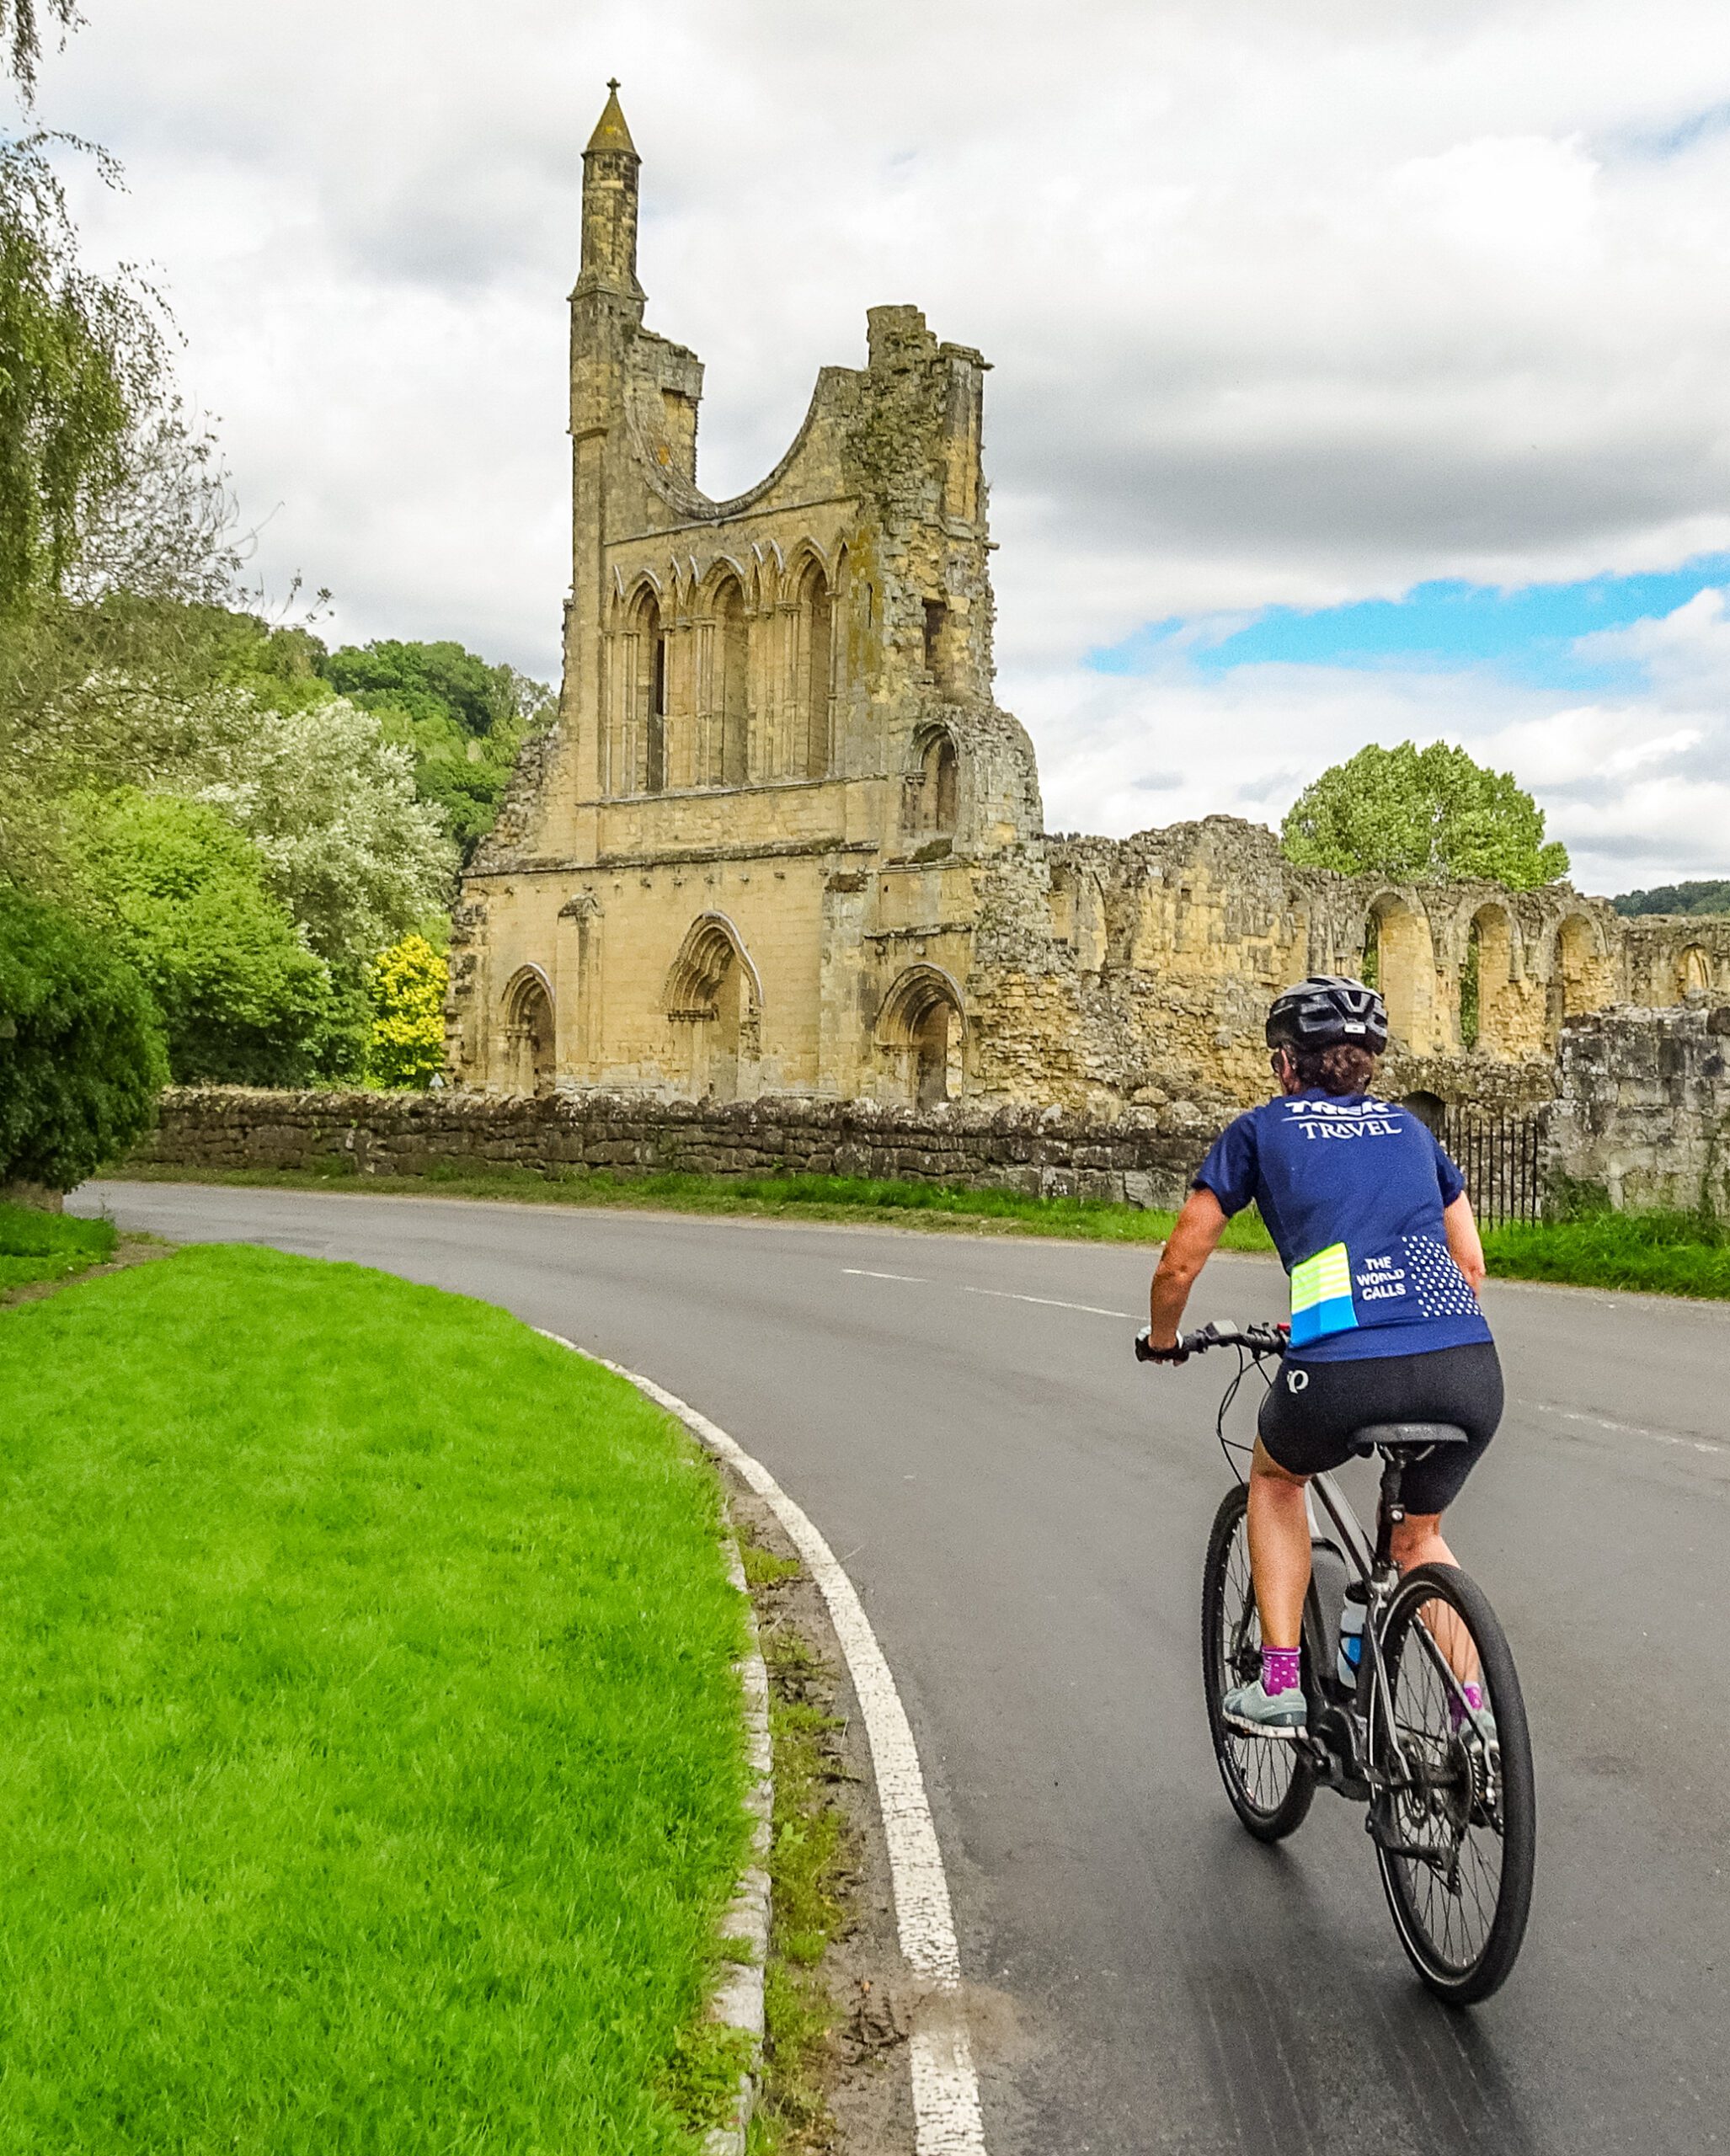 A cyclist rides toward an old stone church in ruins